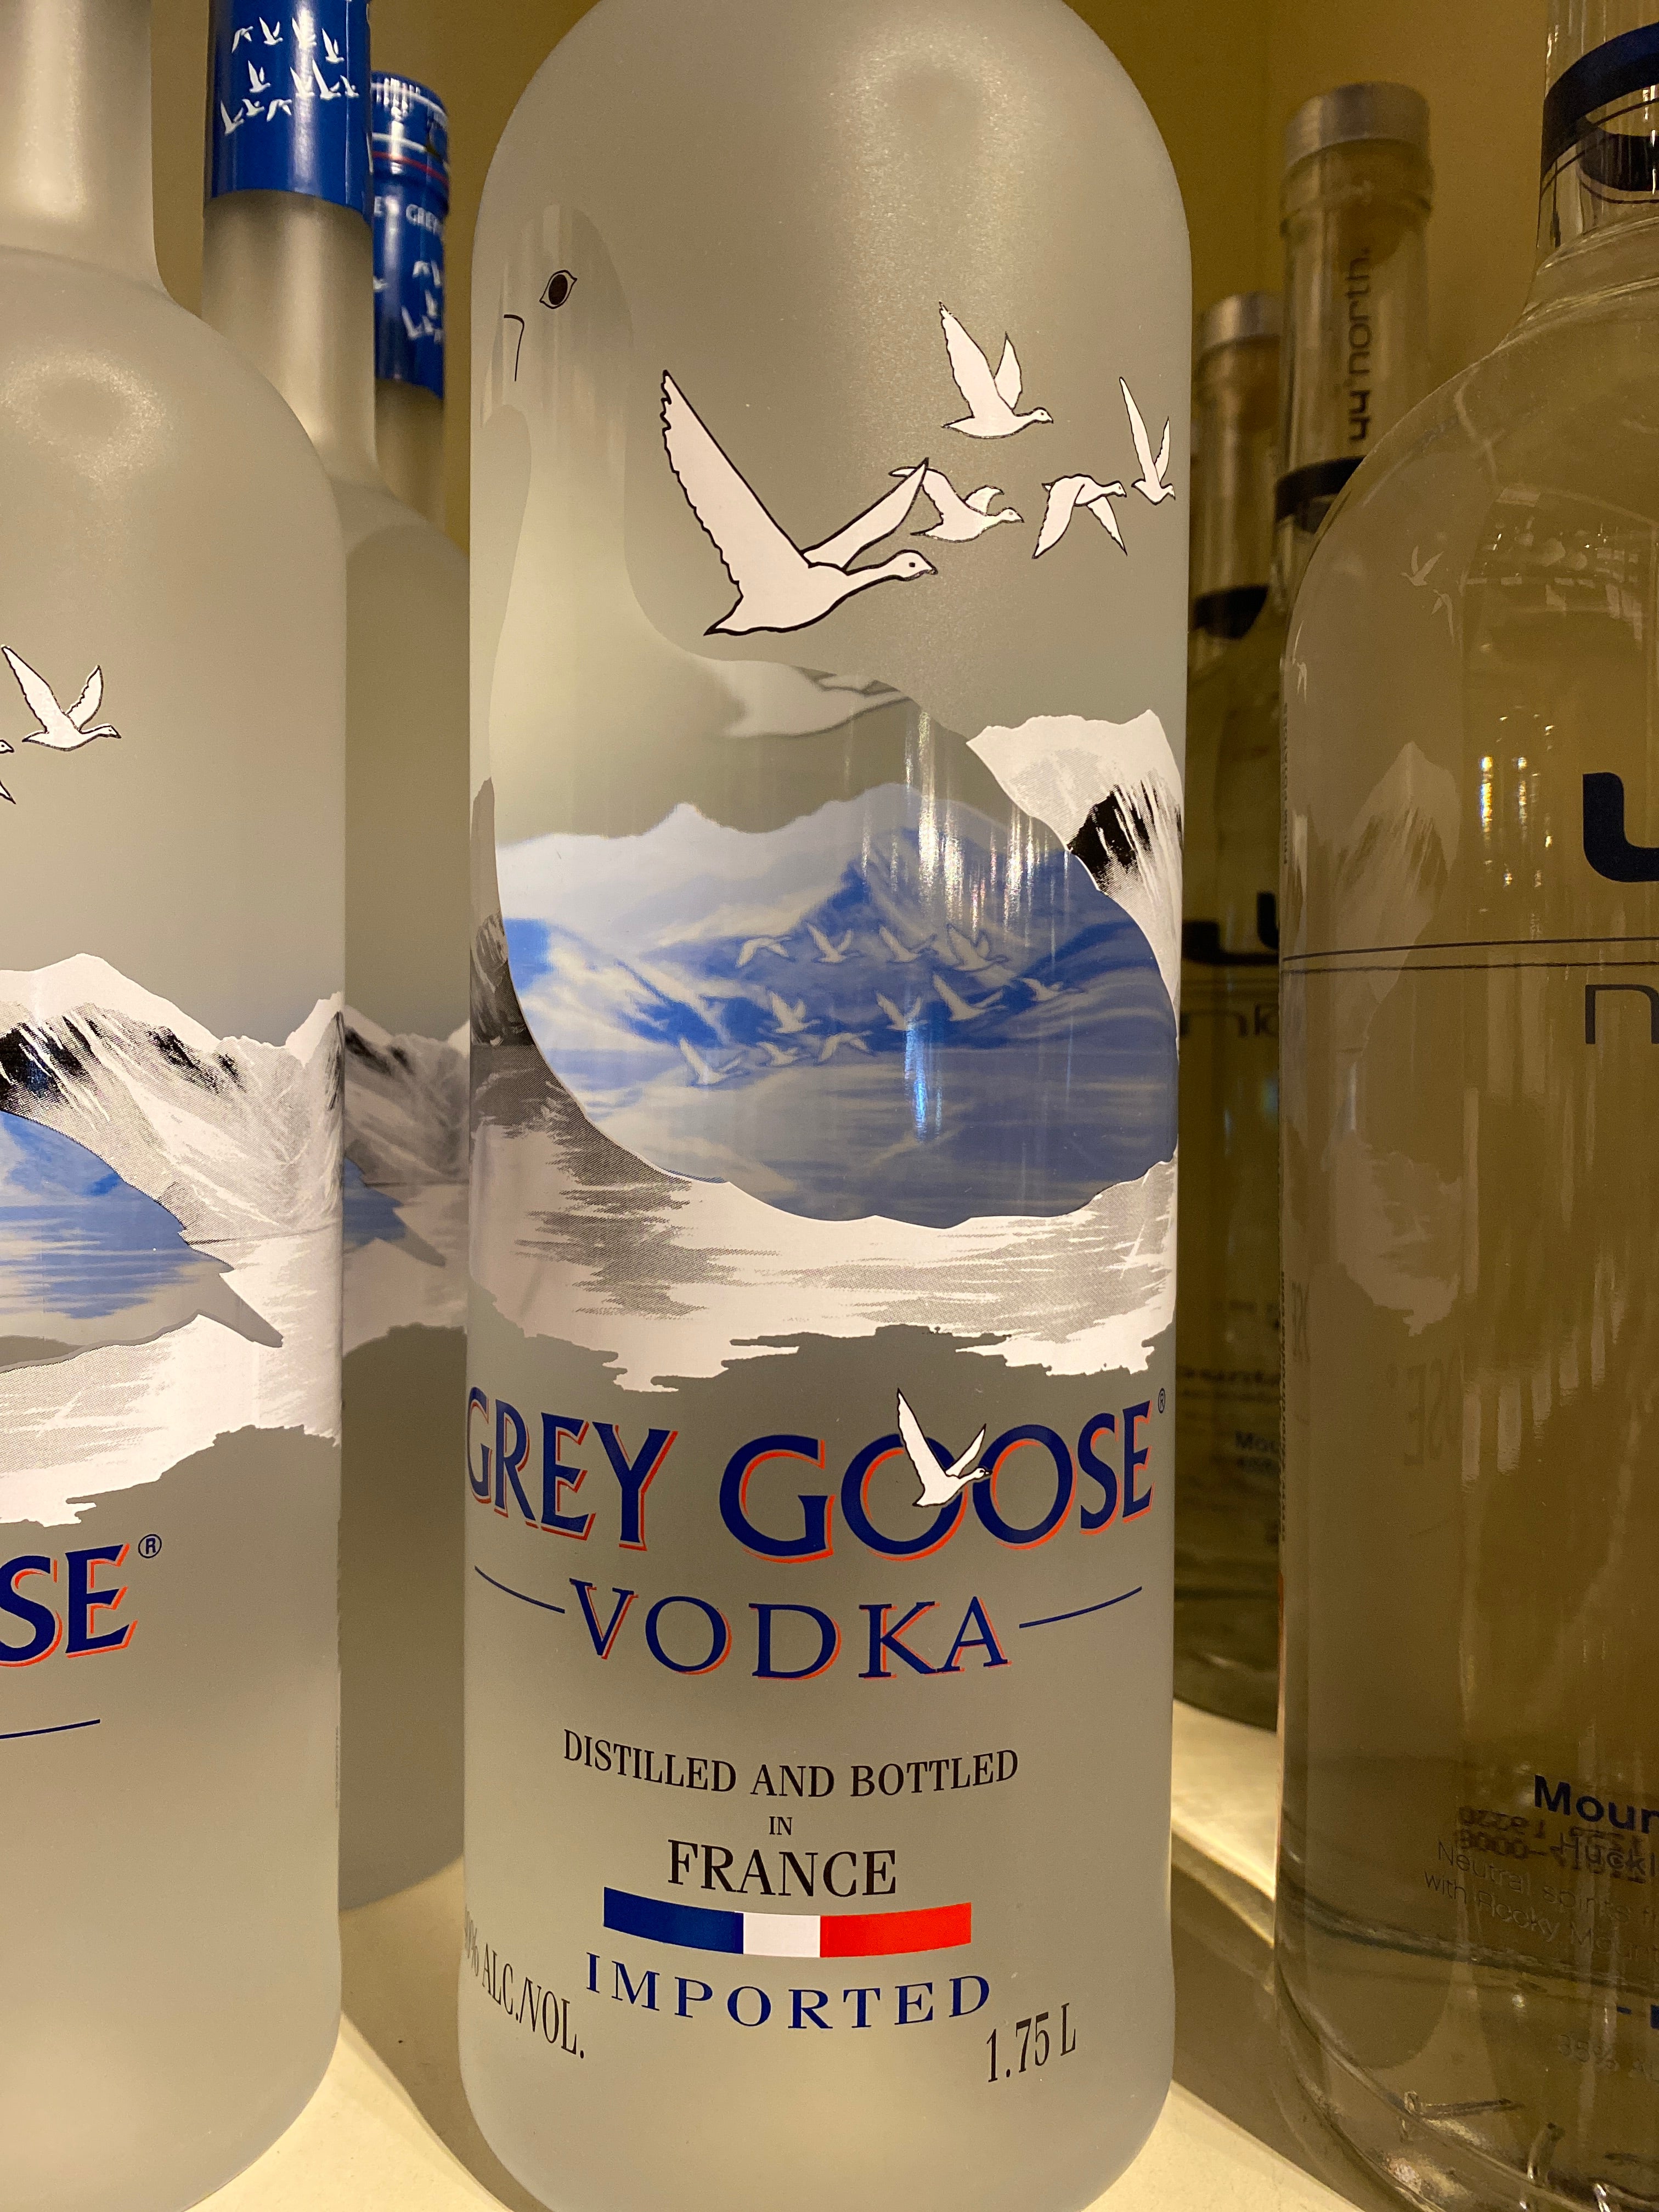 Grey Goose Vodka, 1 L – O'Brien's Liquor & Wine